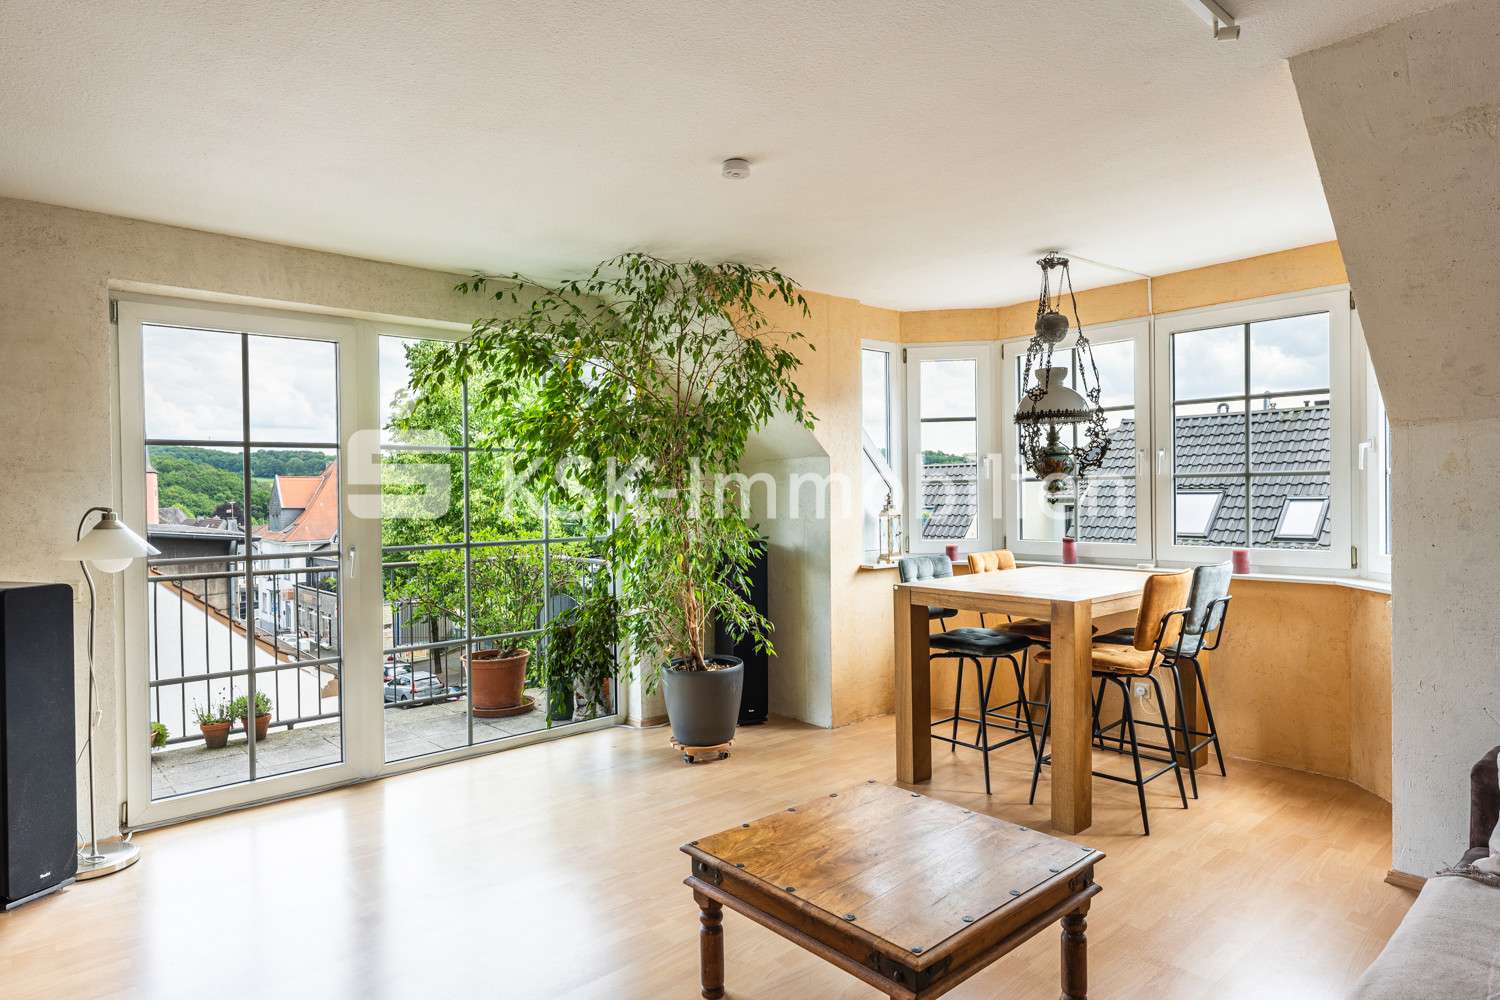 125307 Wohnzimmer  Obergeschoss - Maisonette-Wohnung in 53804 Much mit 109m² kaufen